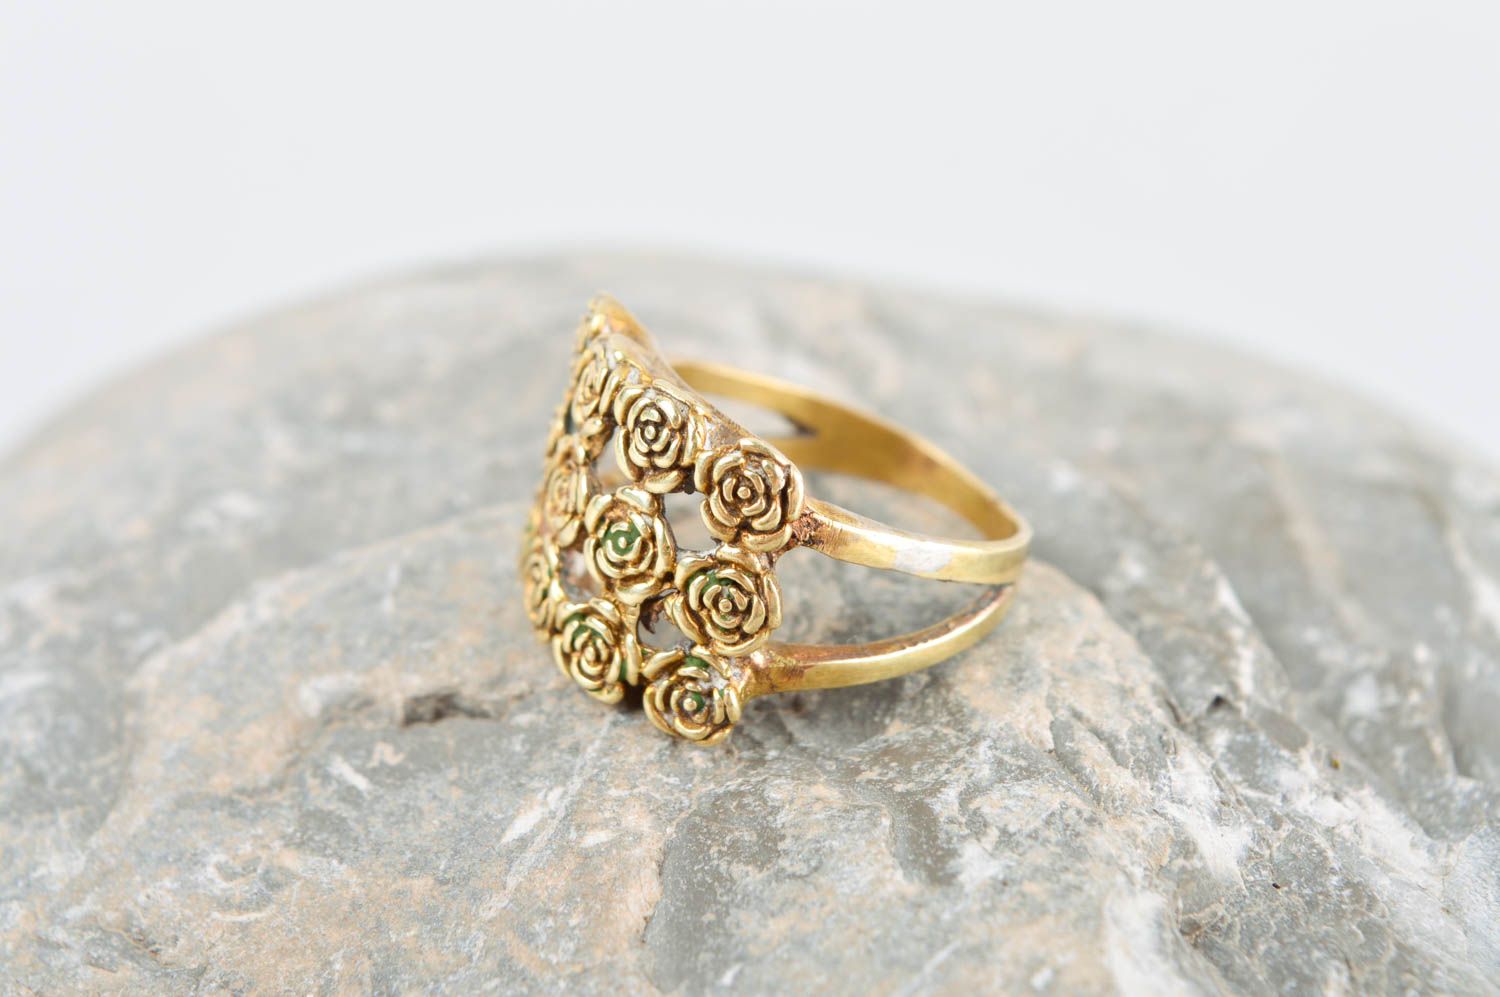 Кольцо ручной работы оригинальное украшение из металла модное кольцо с розами фото 1